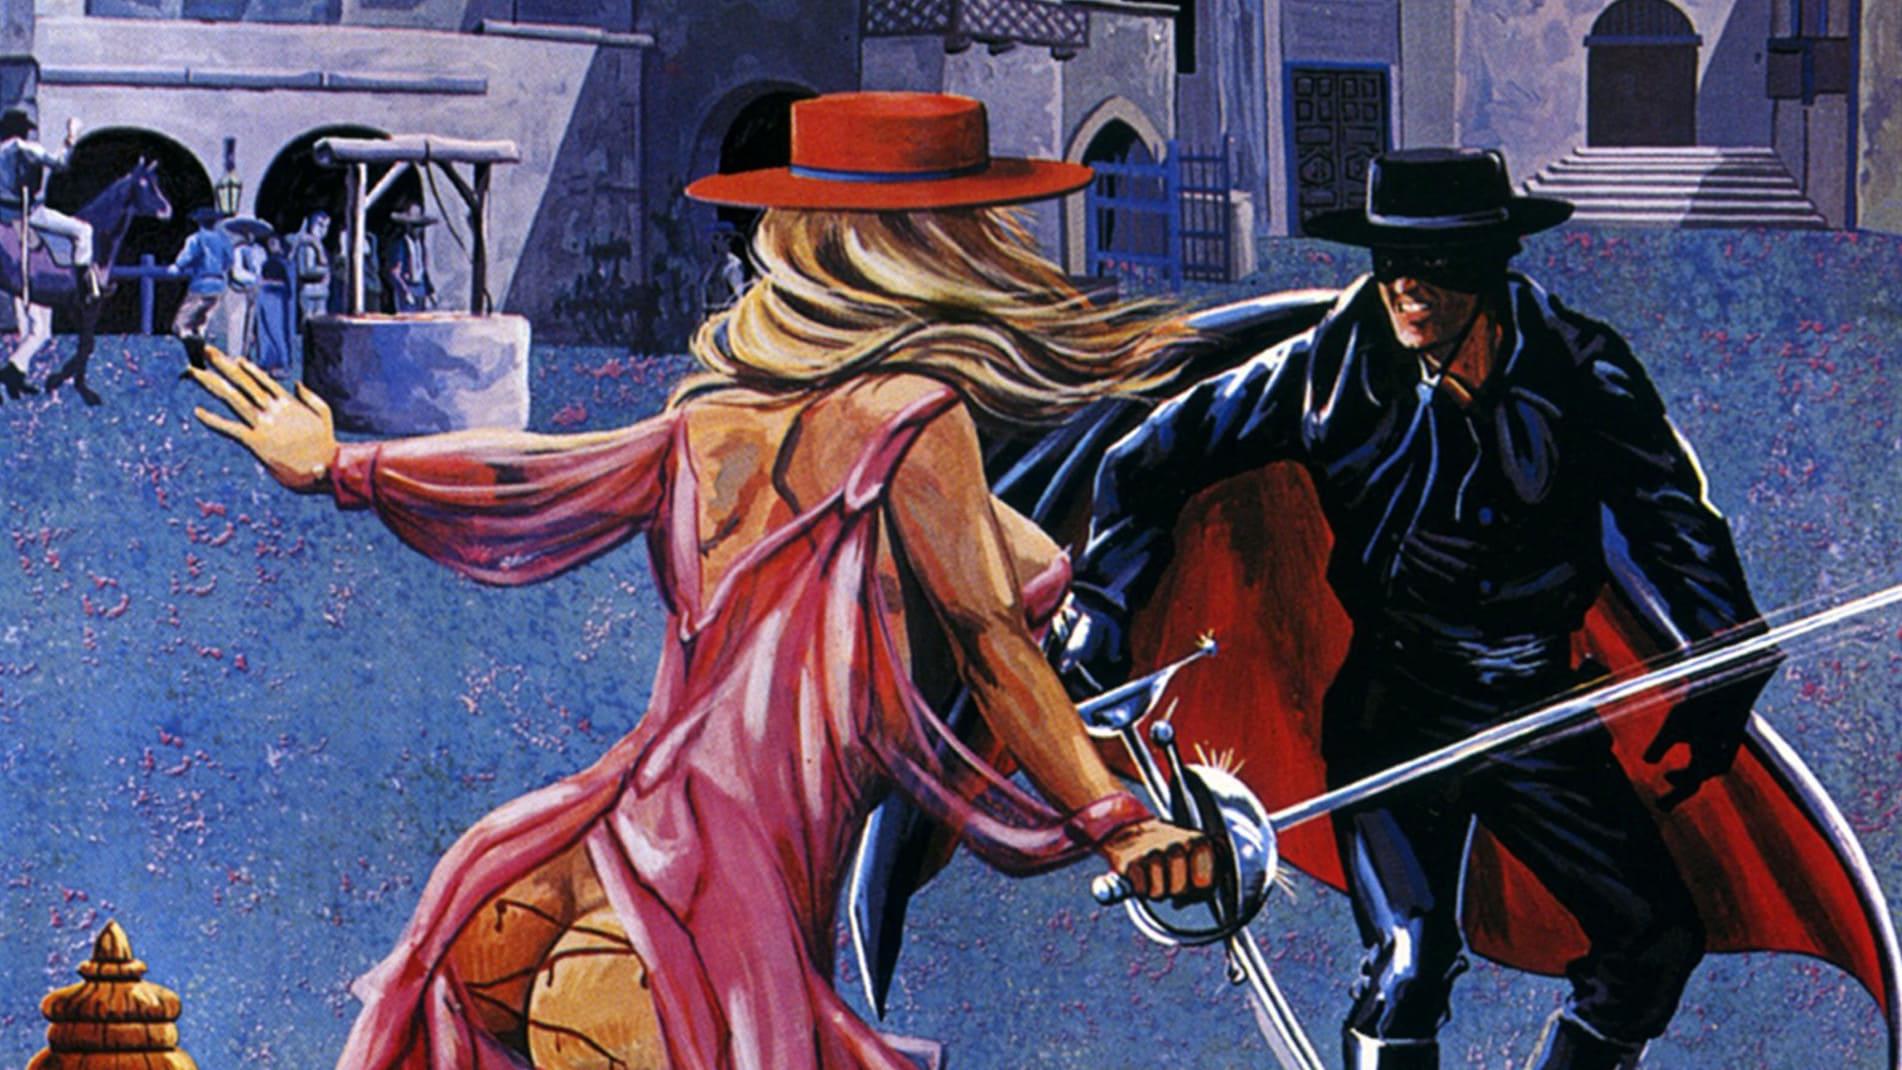 The Erotic Adventures of Zorro backdrop